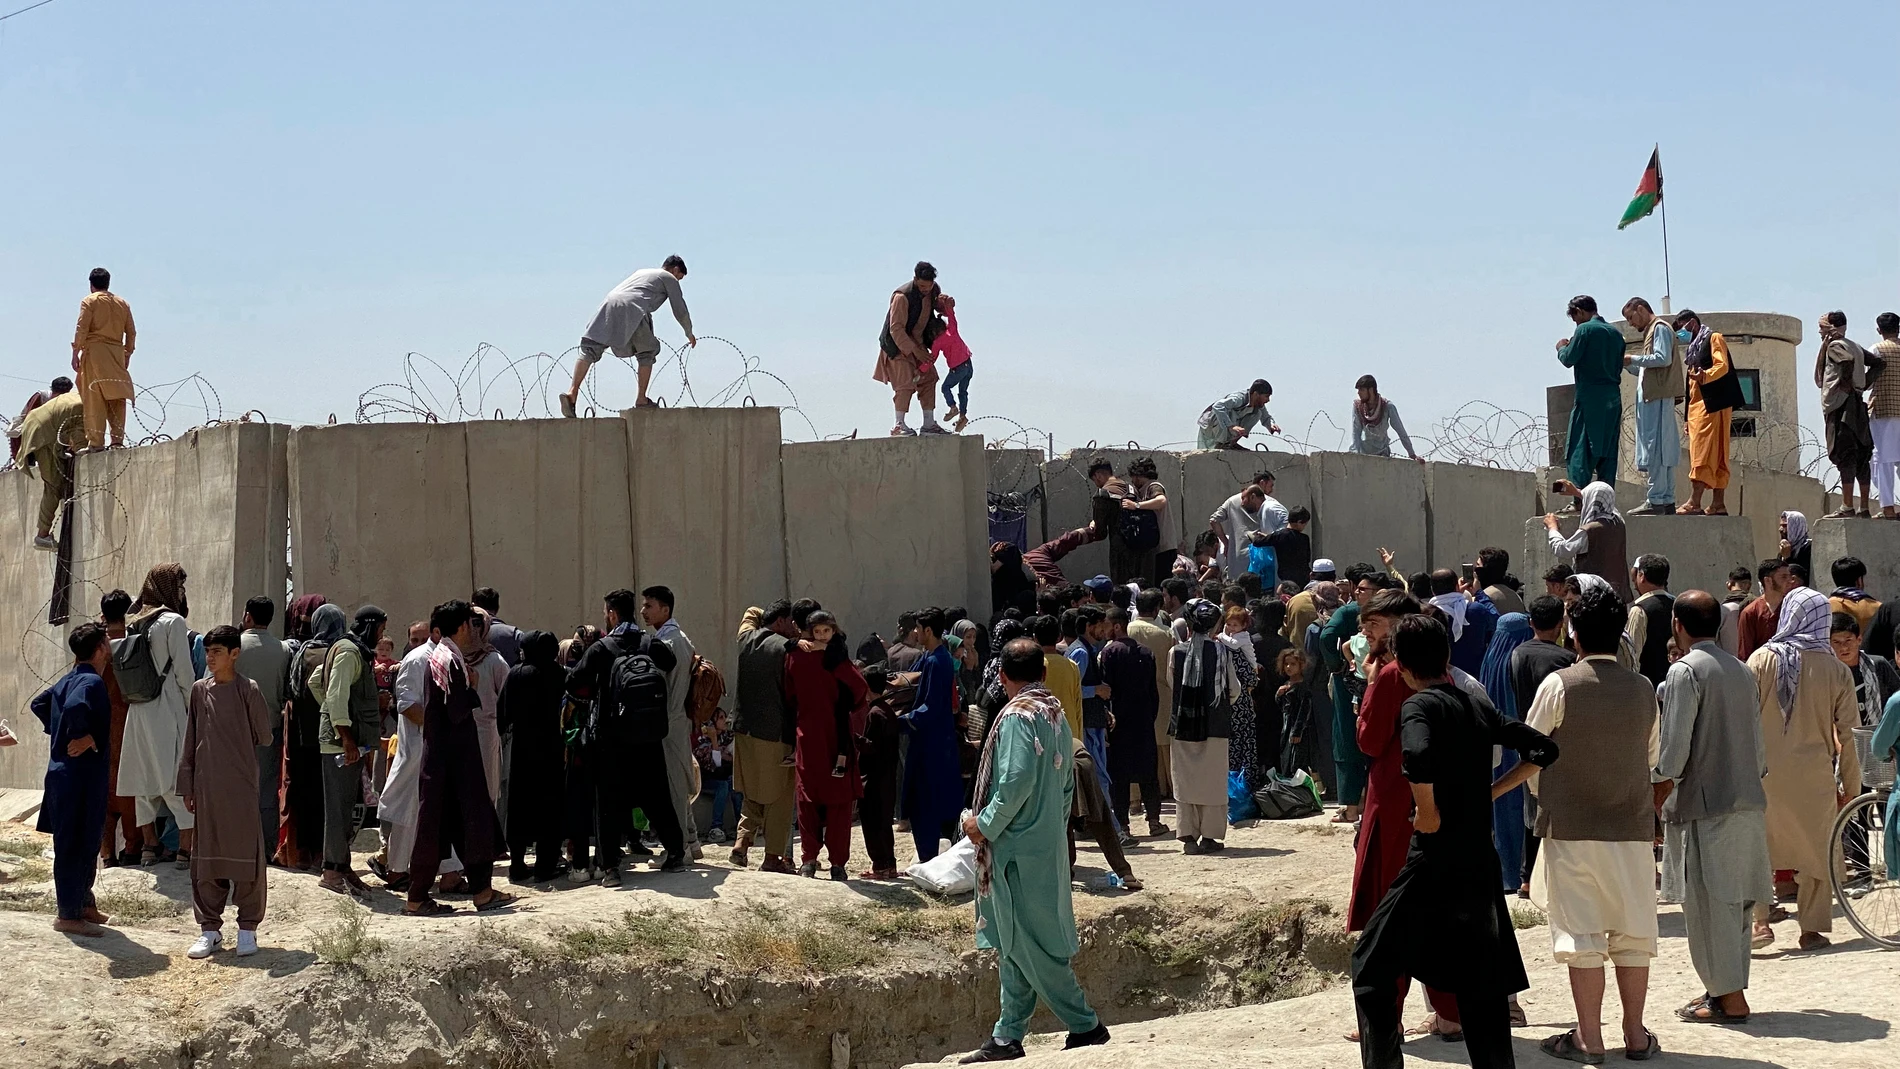 Afganos se agolpan a lo largo del muro del aeropuerto de Kabul en un intento de abandonar el país